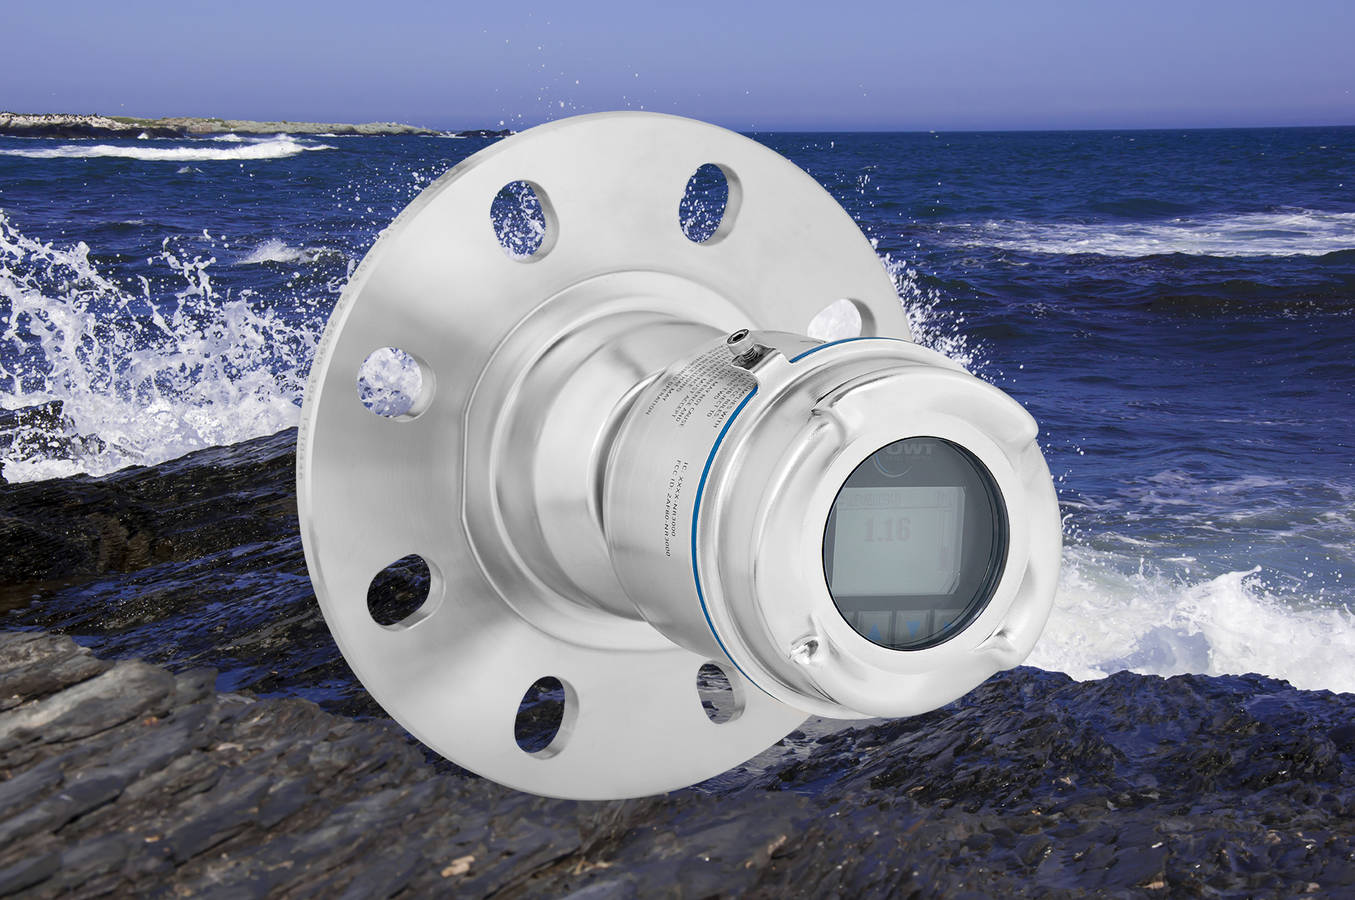 Füllstandüberwachung in Meerwassertanks Freistrahlender Radarsensor als innovative Lösung in Kühlbehältern